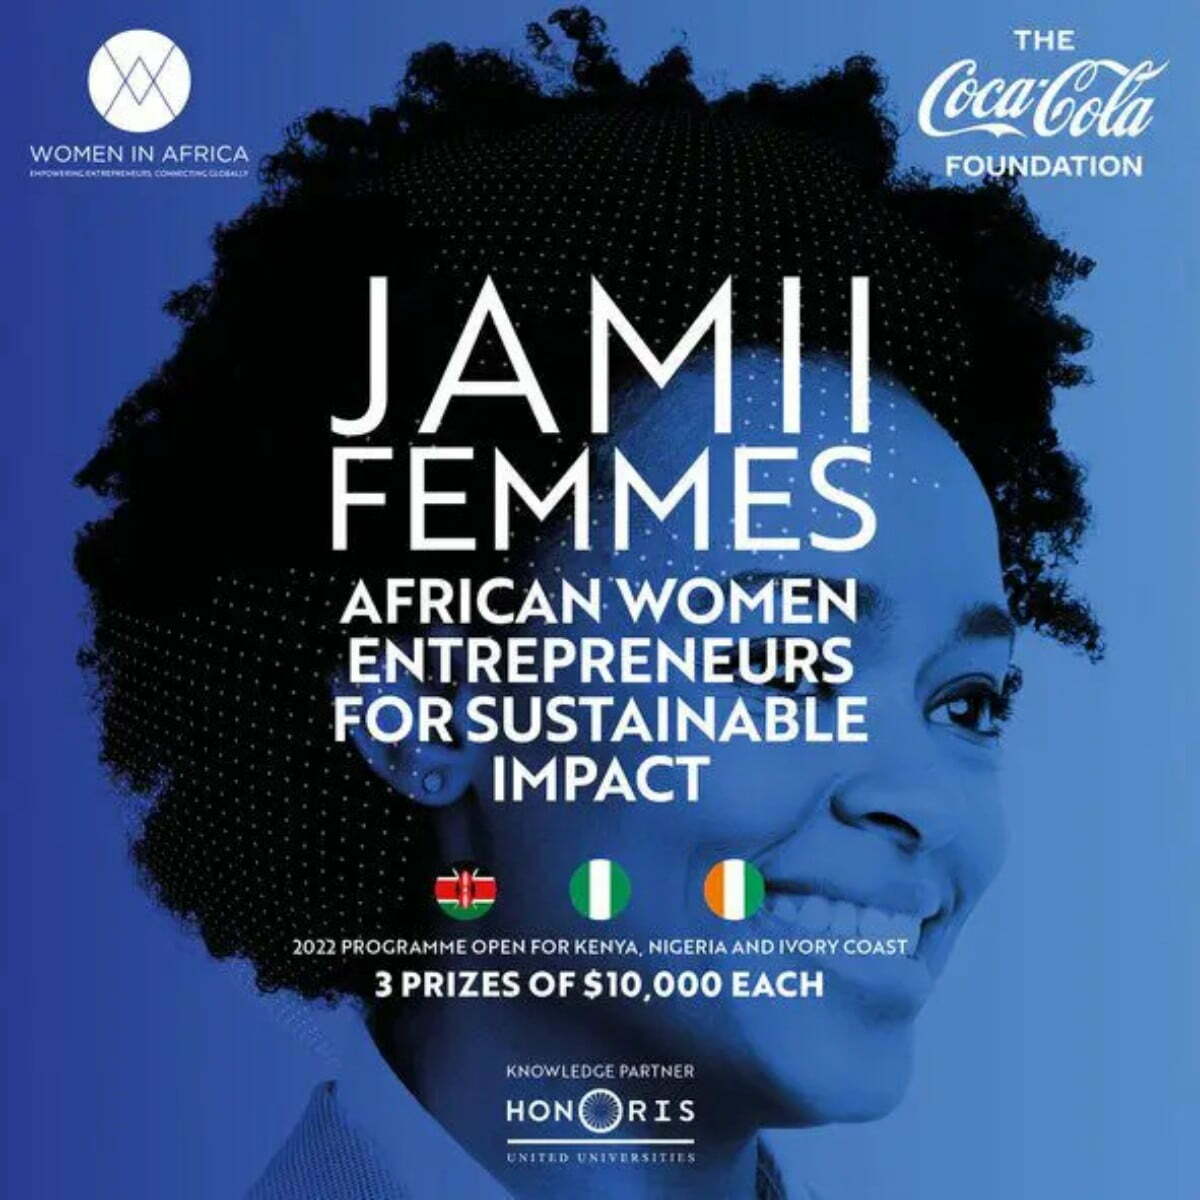 JAMII Femmes Programme 2022 for African Women Entrepreneurs